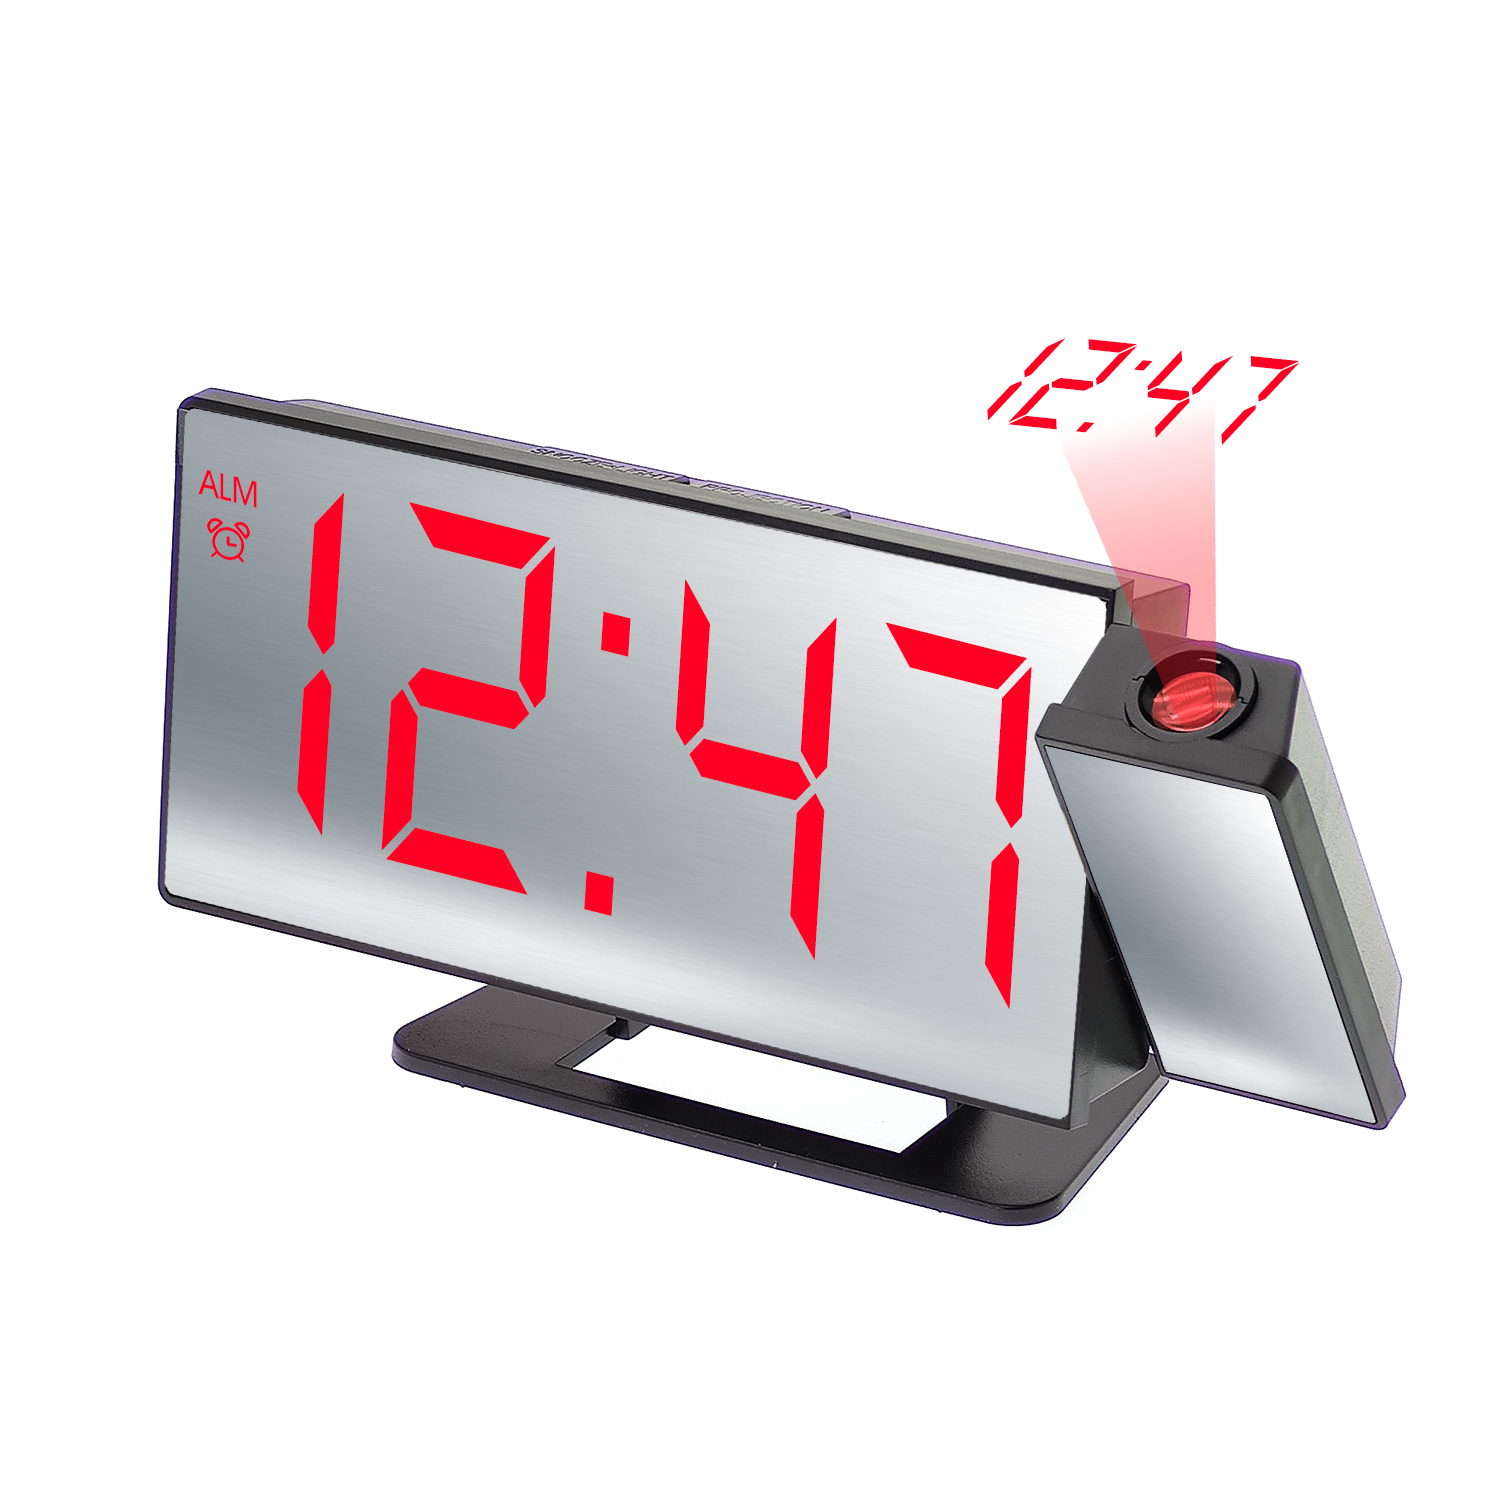 часы настольные VST-896-1 Красные, проекционные (без блока, питание от USB)